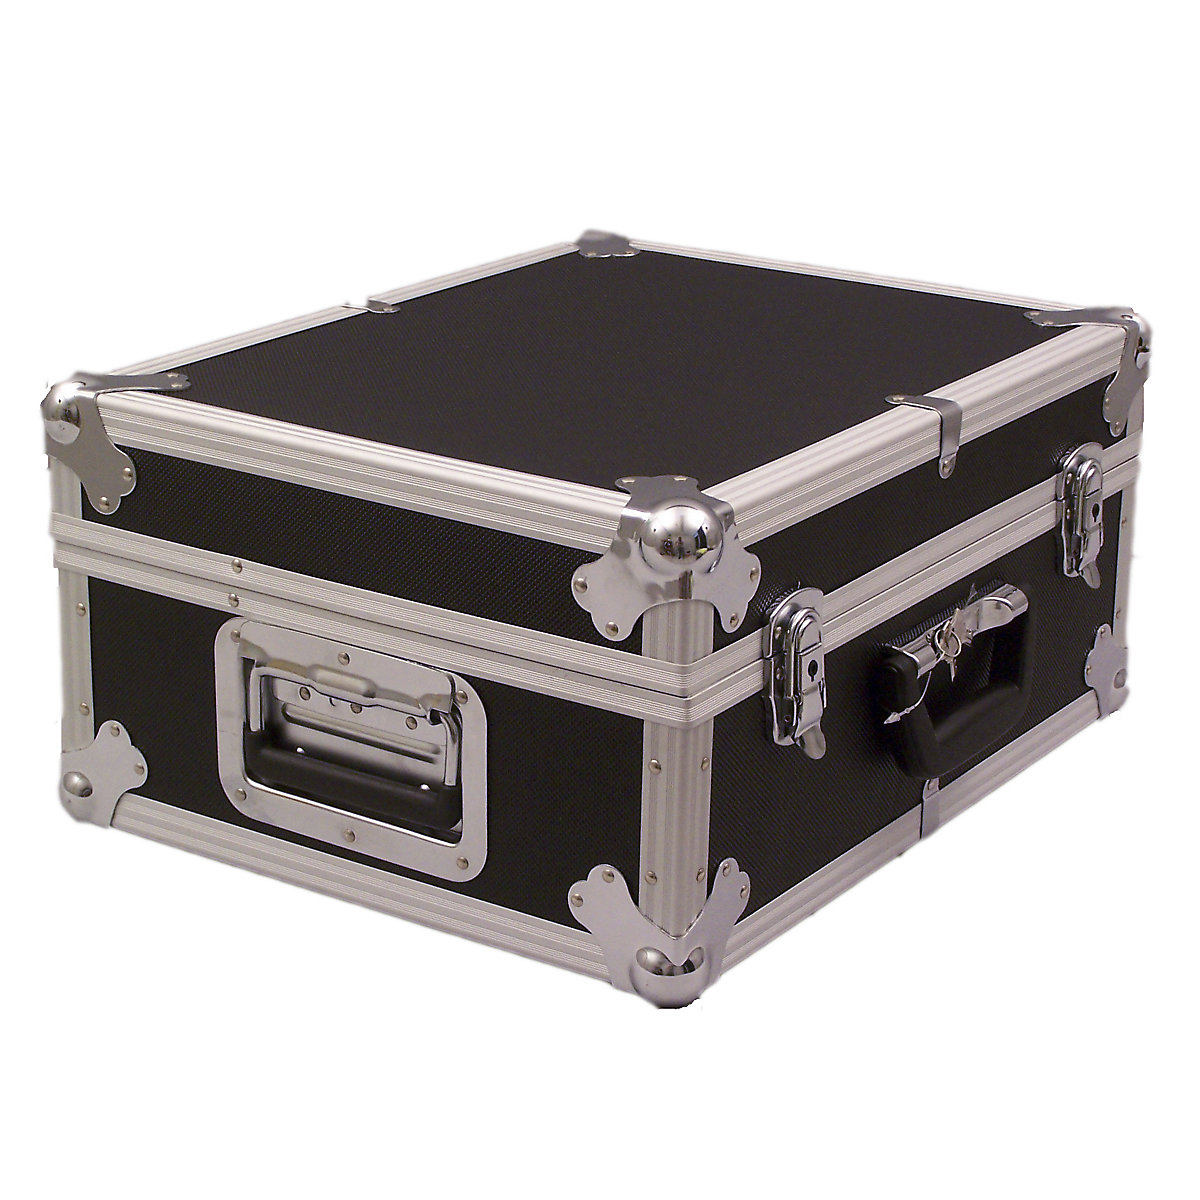 Caja de aluminio - Cajas de aluminio - Cajas - Equipamiento de taller -  Catálogo